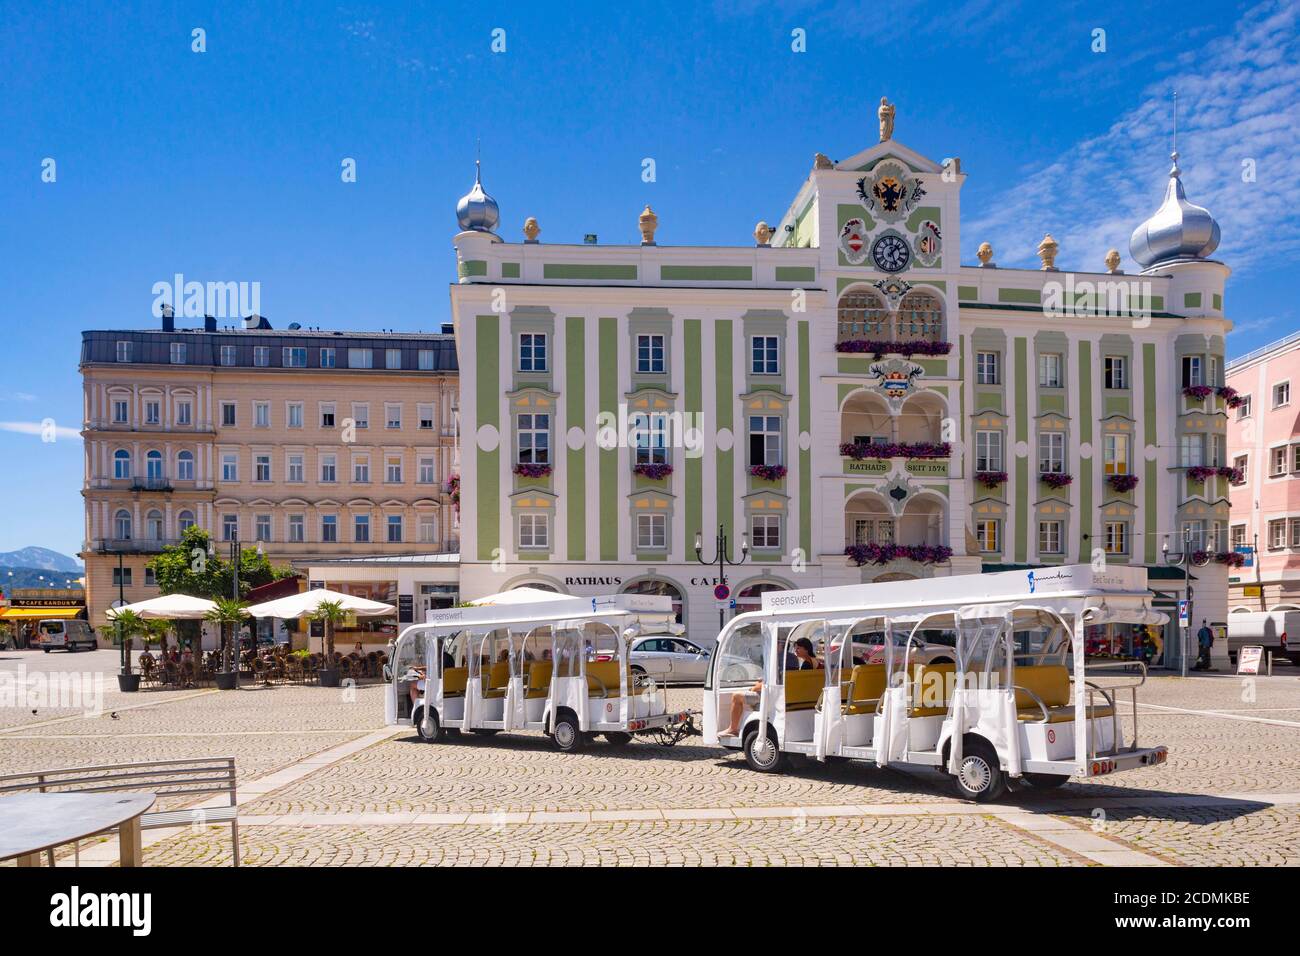 Spaziergang am Rathauspatz, Rathaus mit Keramikkarillon, Gmunden, Salzkammergut, Oberösterreich, Österreich Stockfoto